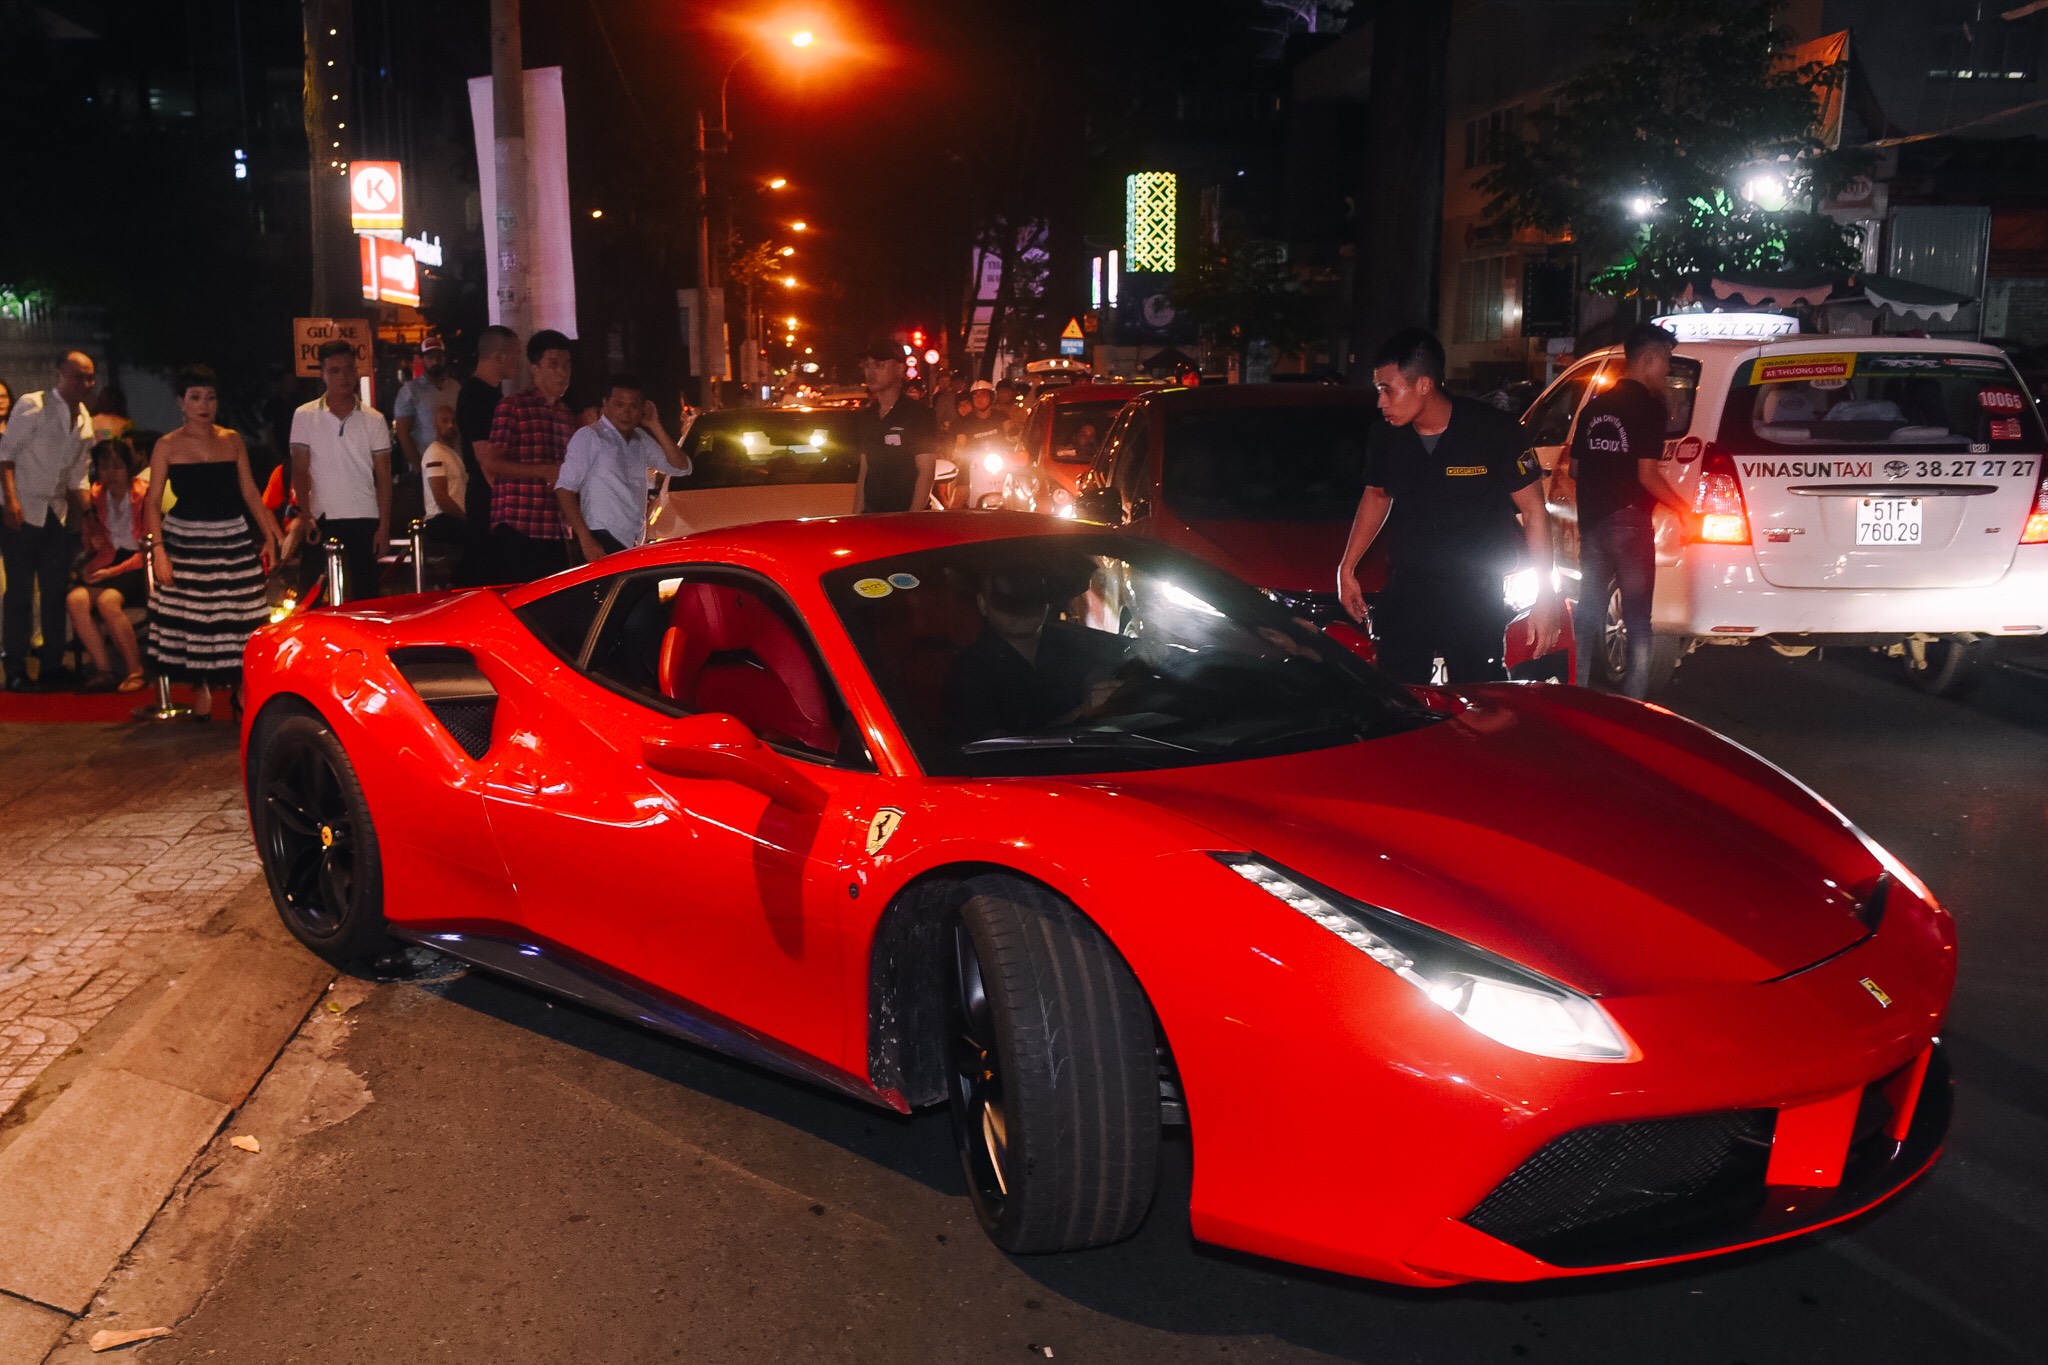 Tuấn Hưng vừa gây chú ý khi xuất hiện biểu diễn tại một quán bar ở trung tâm TP.HCM. Nam ca sĩ diện vest bảnh bao, tự lái siêu xe Ferrari 48 GTB 16 tỷ chạy show.